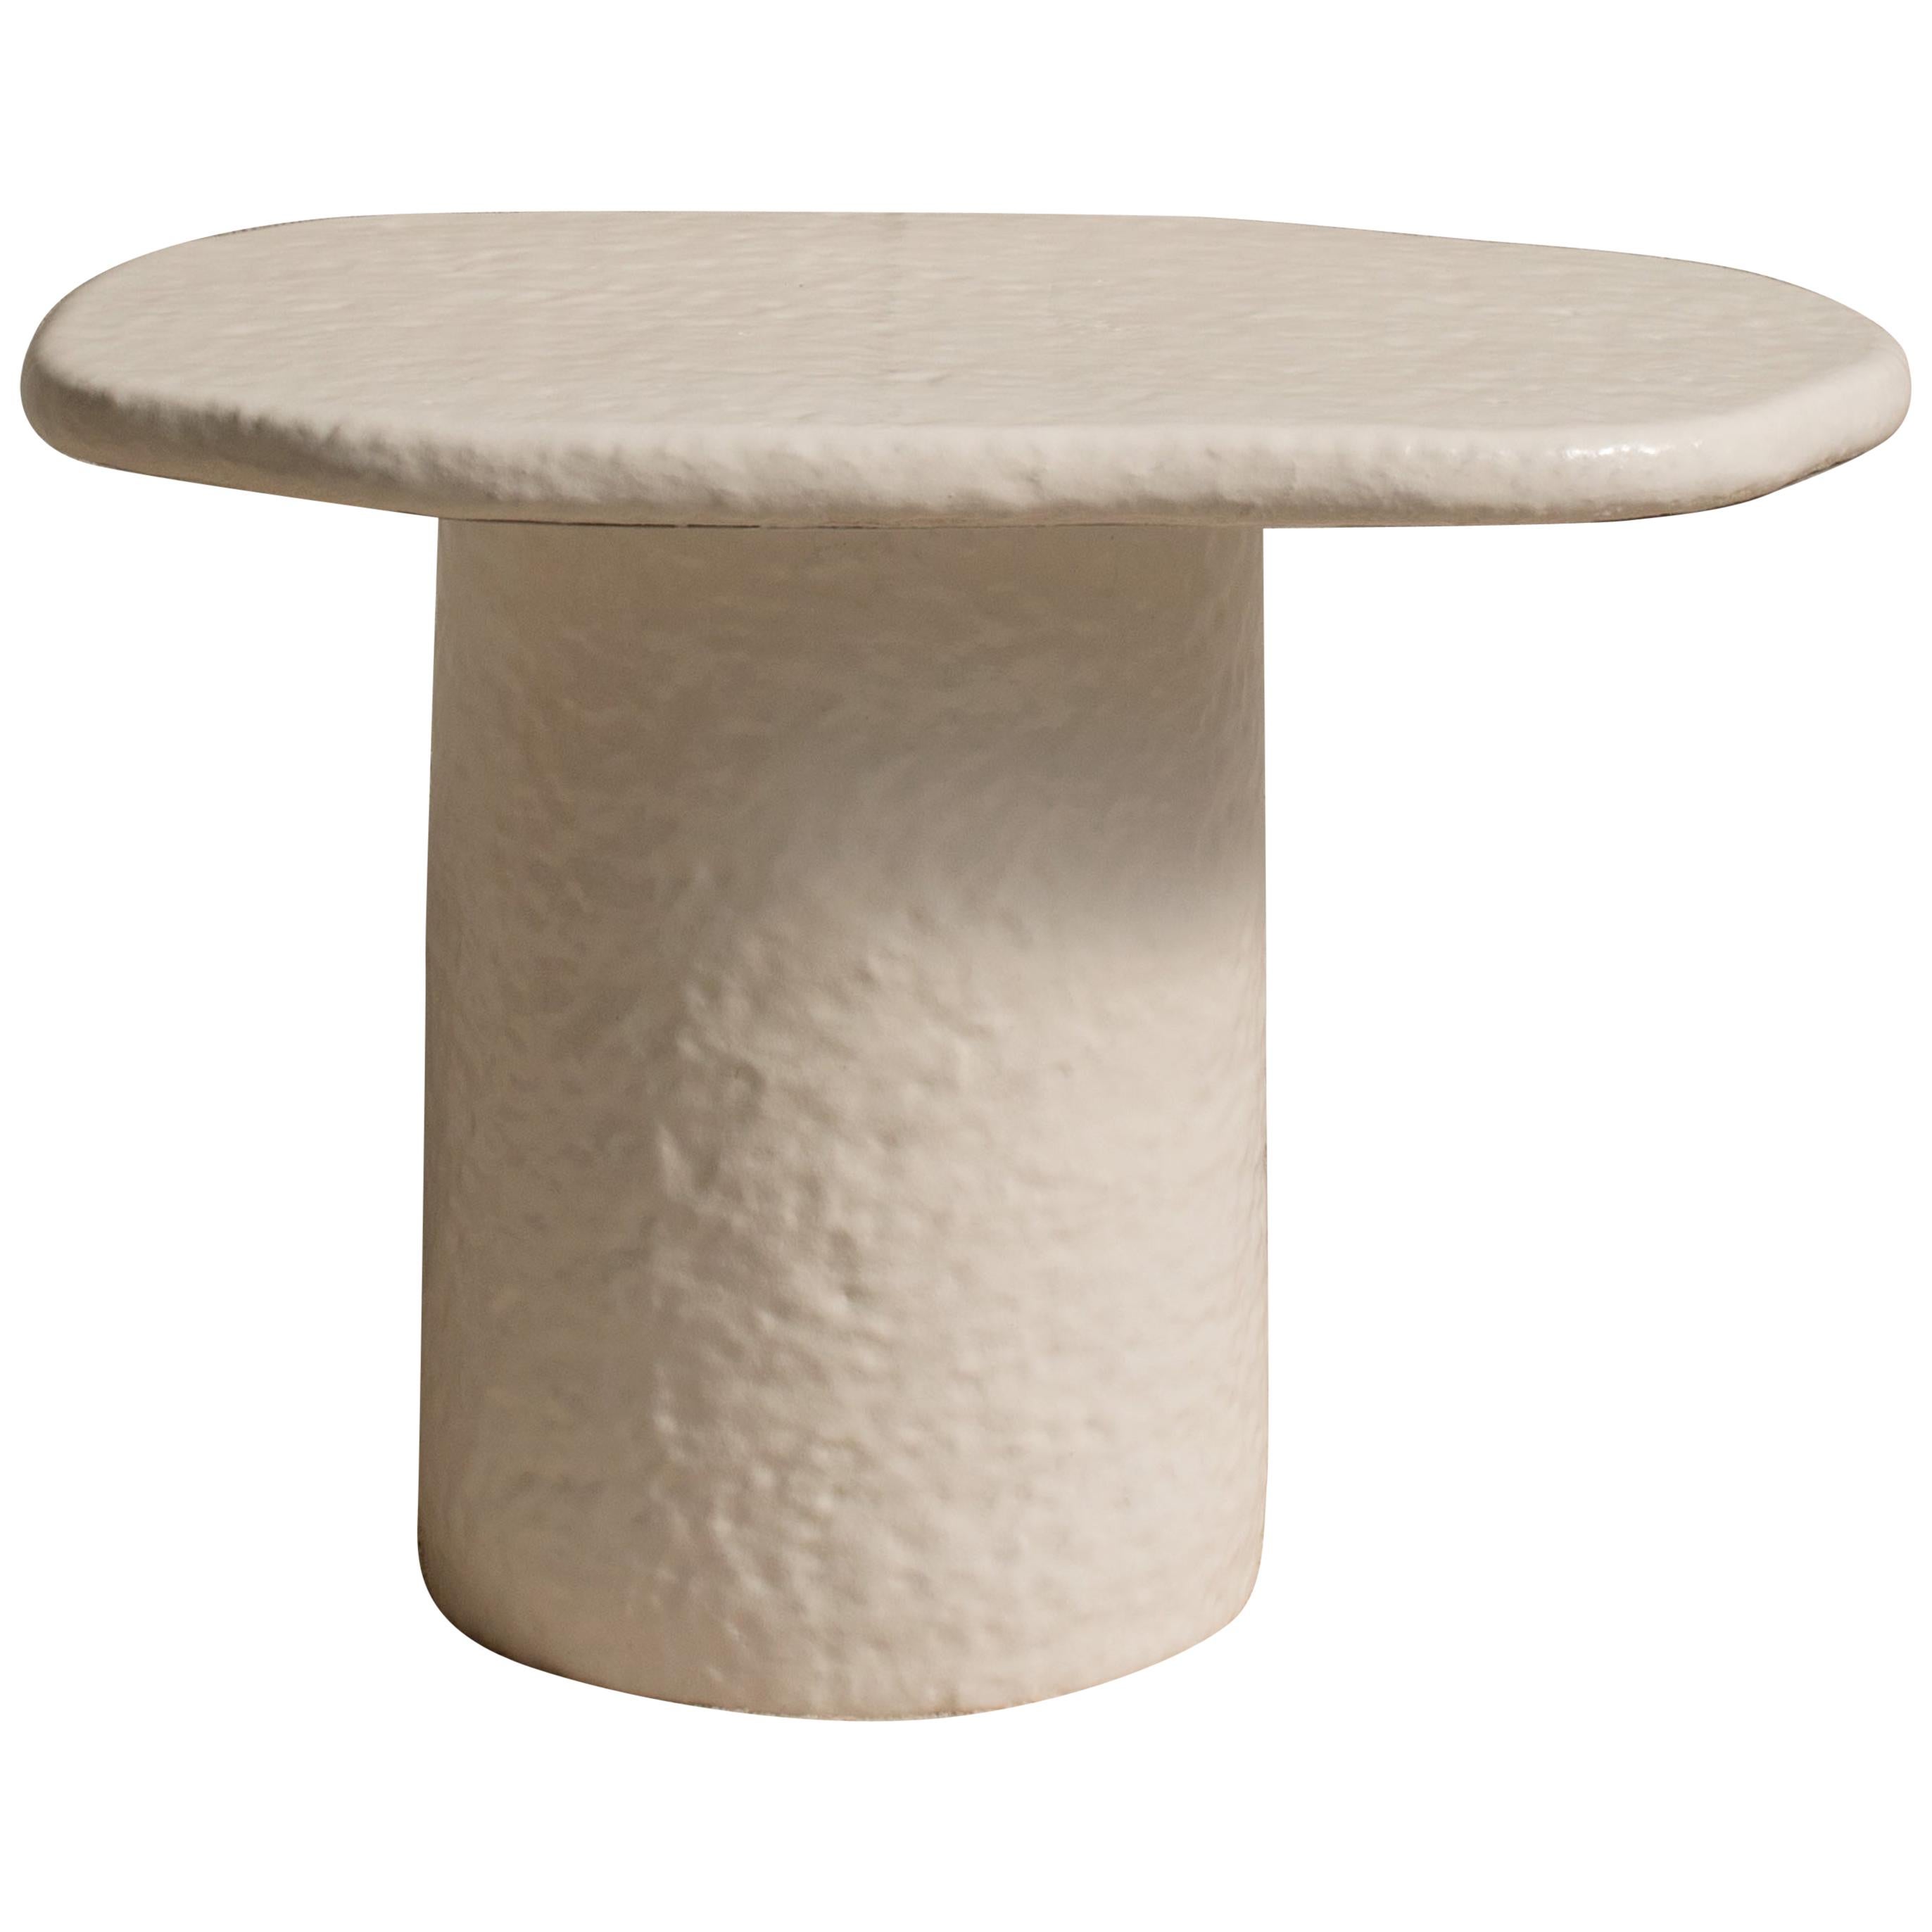 Mini Table Contemporary Coffee Table in Ceramic